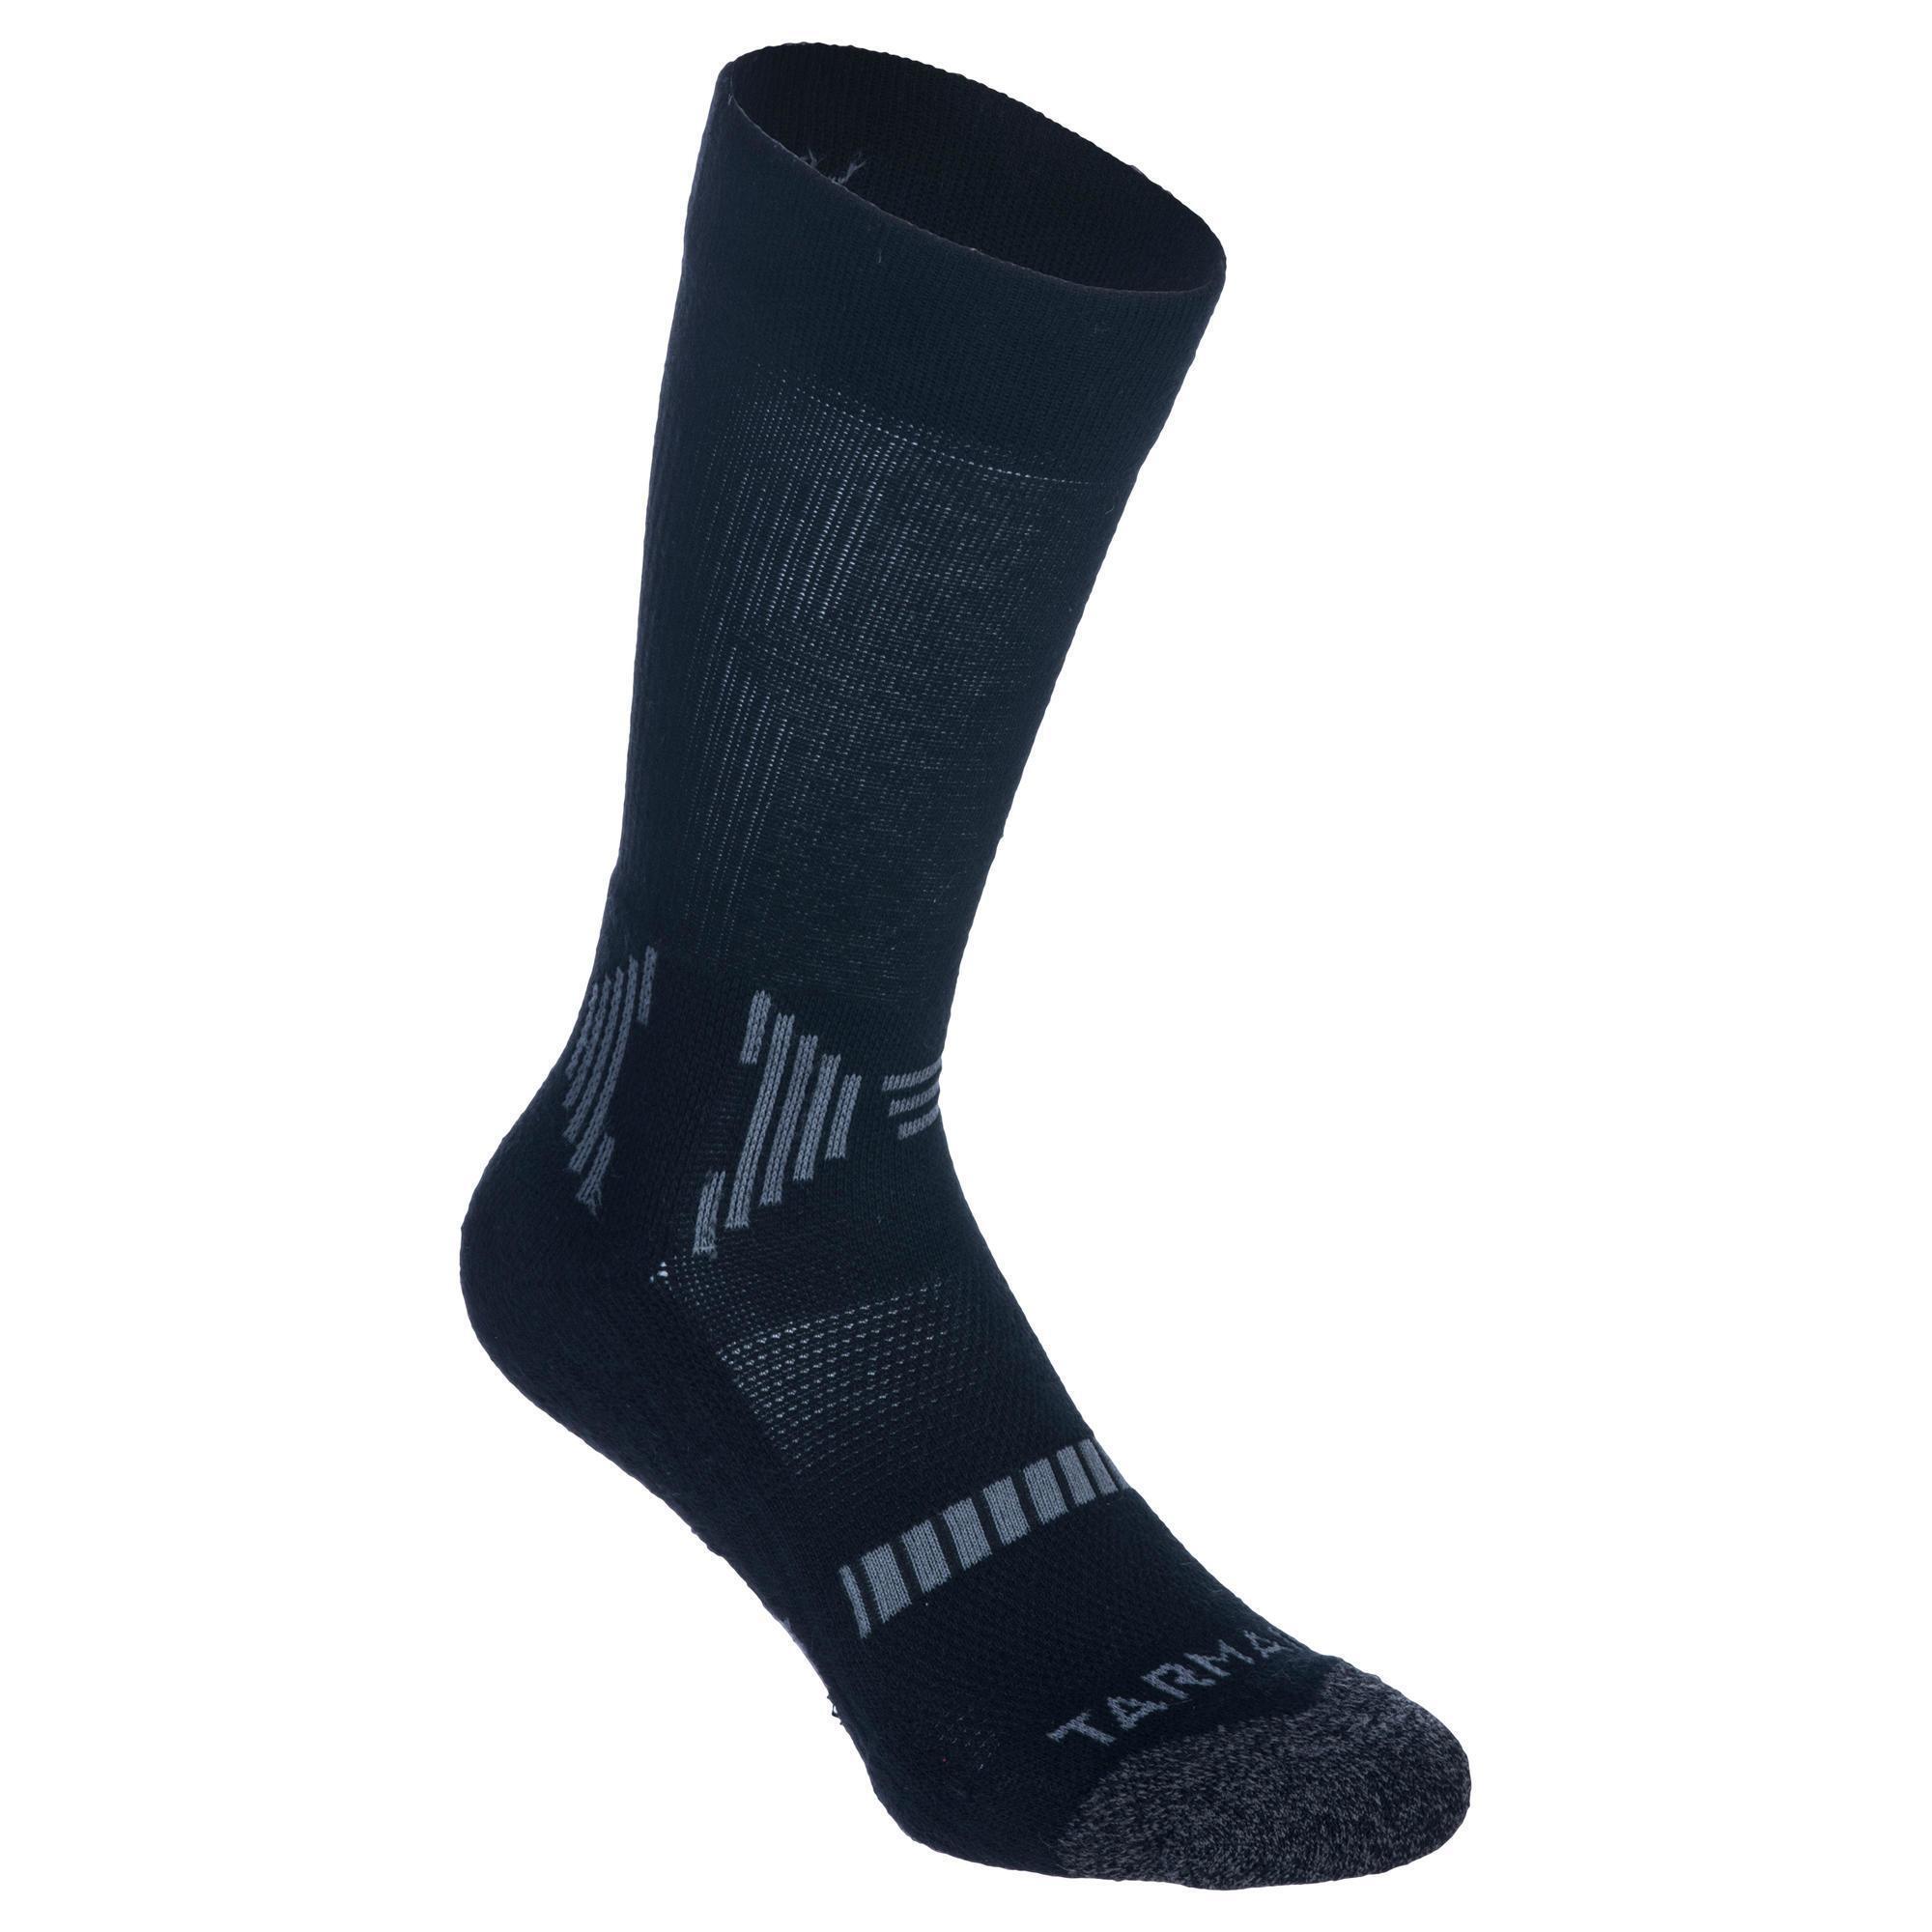 Men's/Women's Mid-Rise Basketball Socks SO500 Twin-Pack - Black 2/8